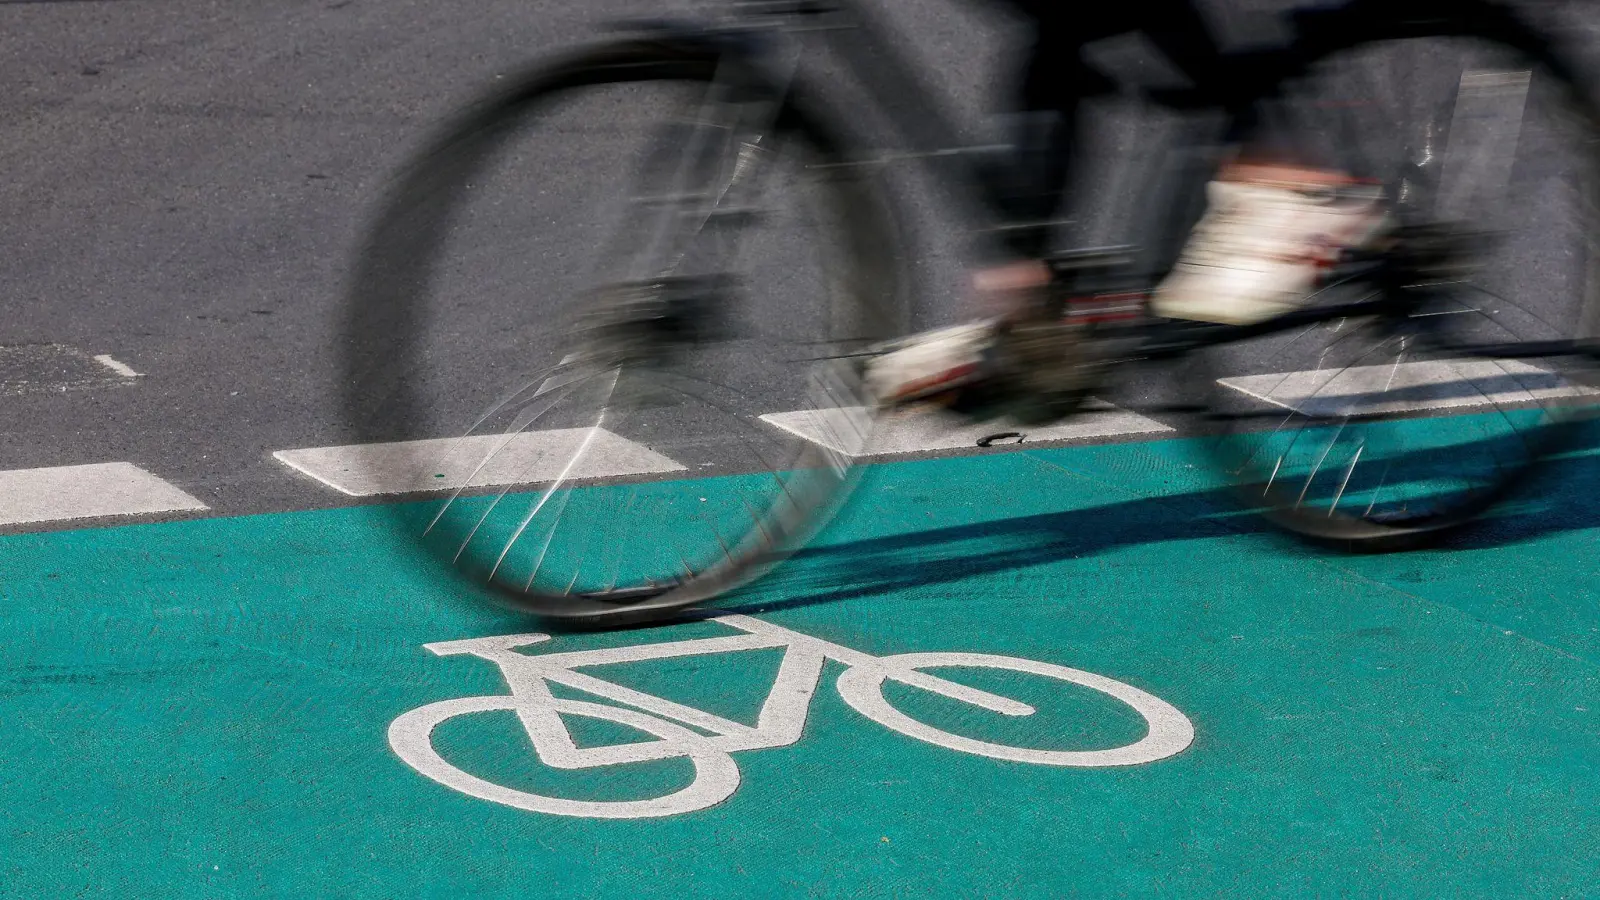 Radfahrerinnen und Radfahrer müssen grundsätzlich am rechten Rand der Fahrbahn fahren. Eine Pflicht für die Nutzung eines Radwegs gilt nur, wenn er mit einem der drei blauen Radweg-Schilder gekennzeichnet ist. (Foto: Jan Woitas/dpa)